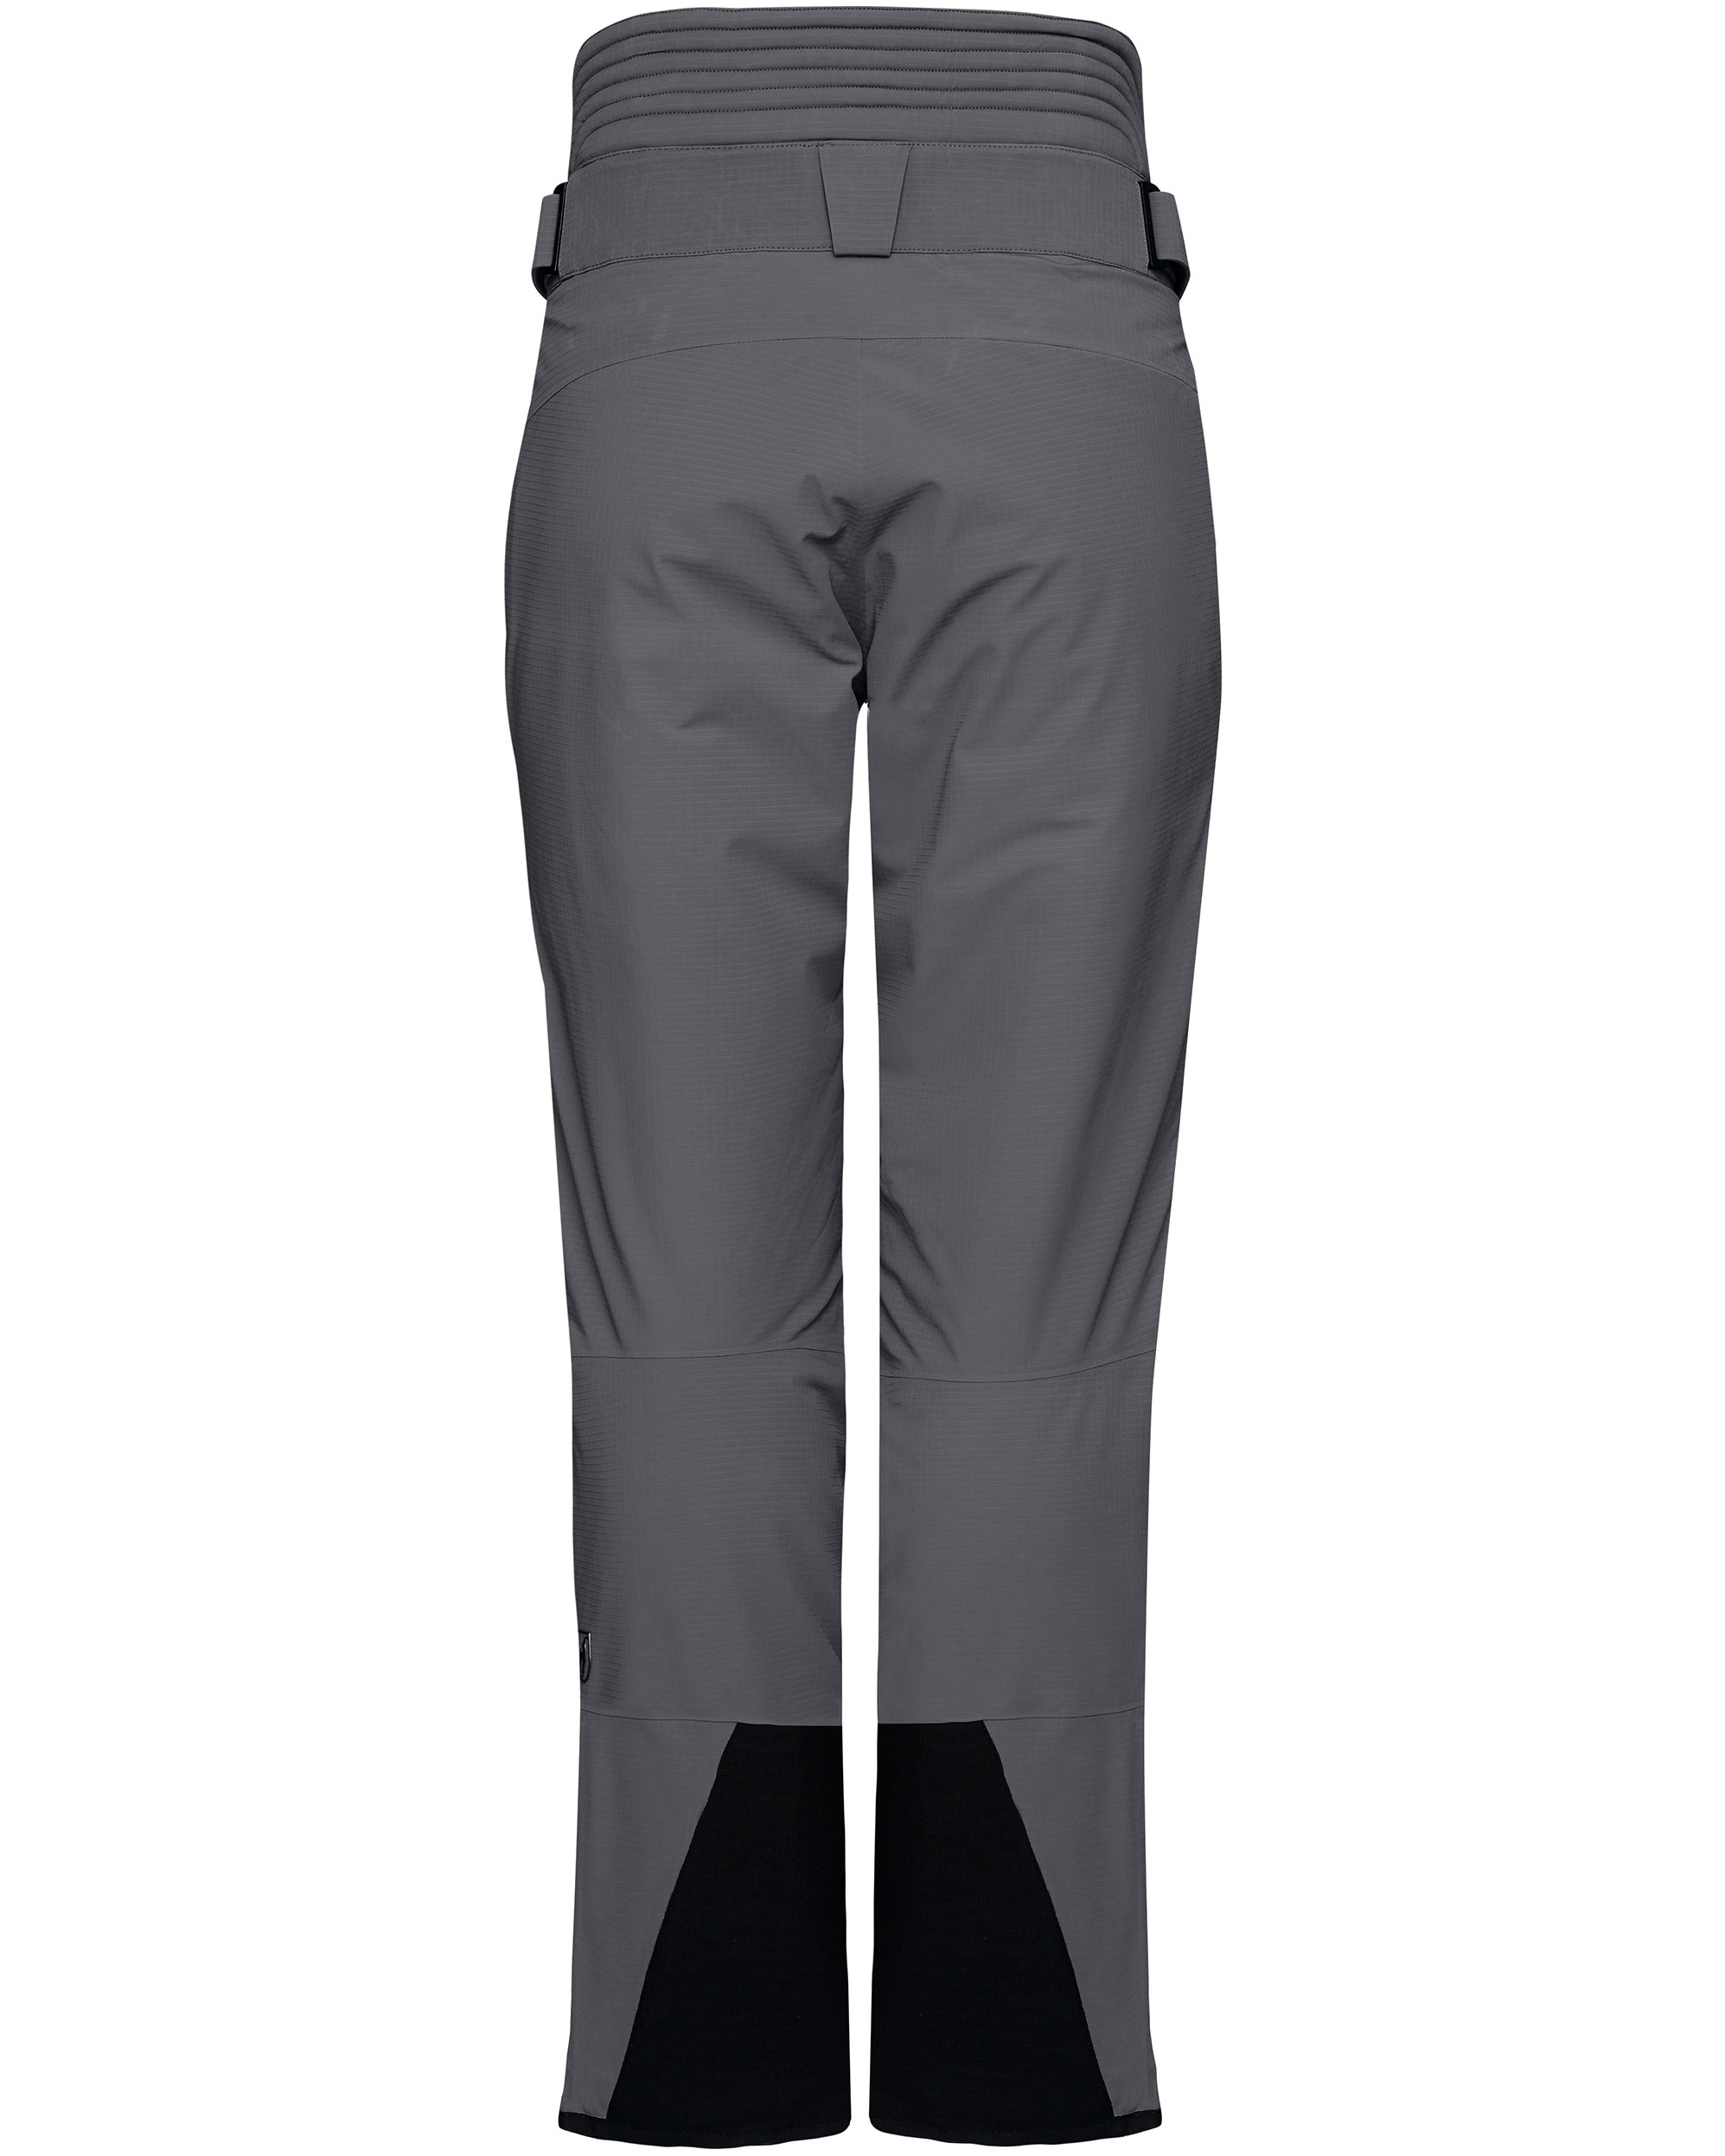 Toni Sailer Steve Splendid - Ski Pants - buy online at Sport Gardena